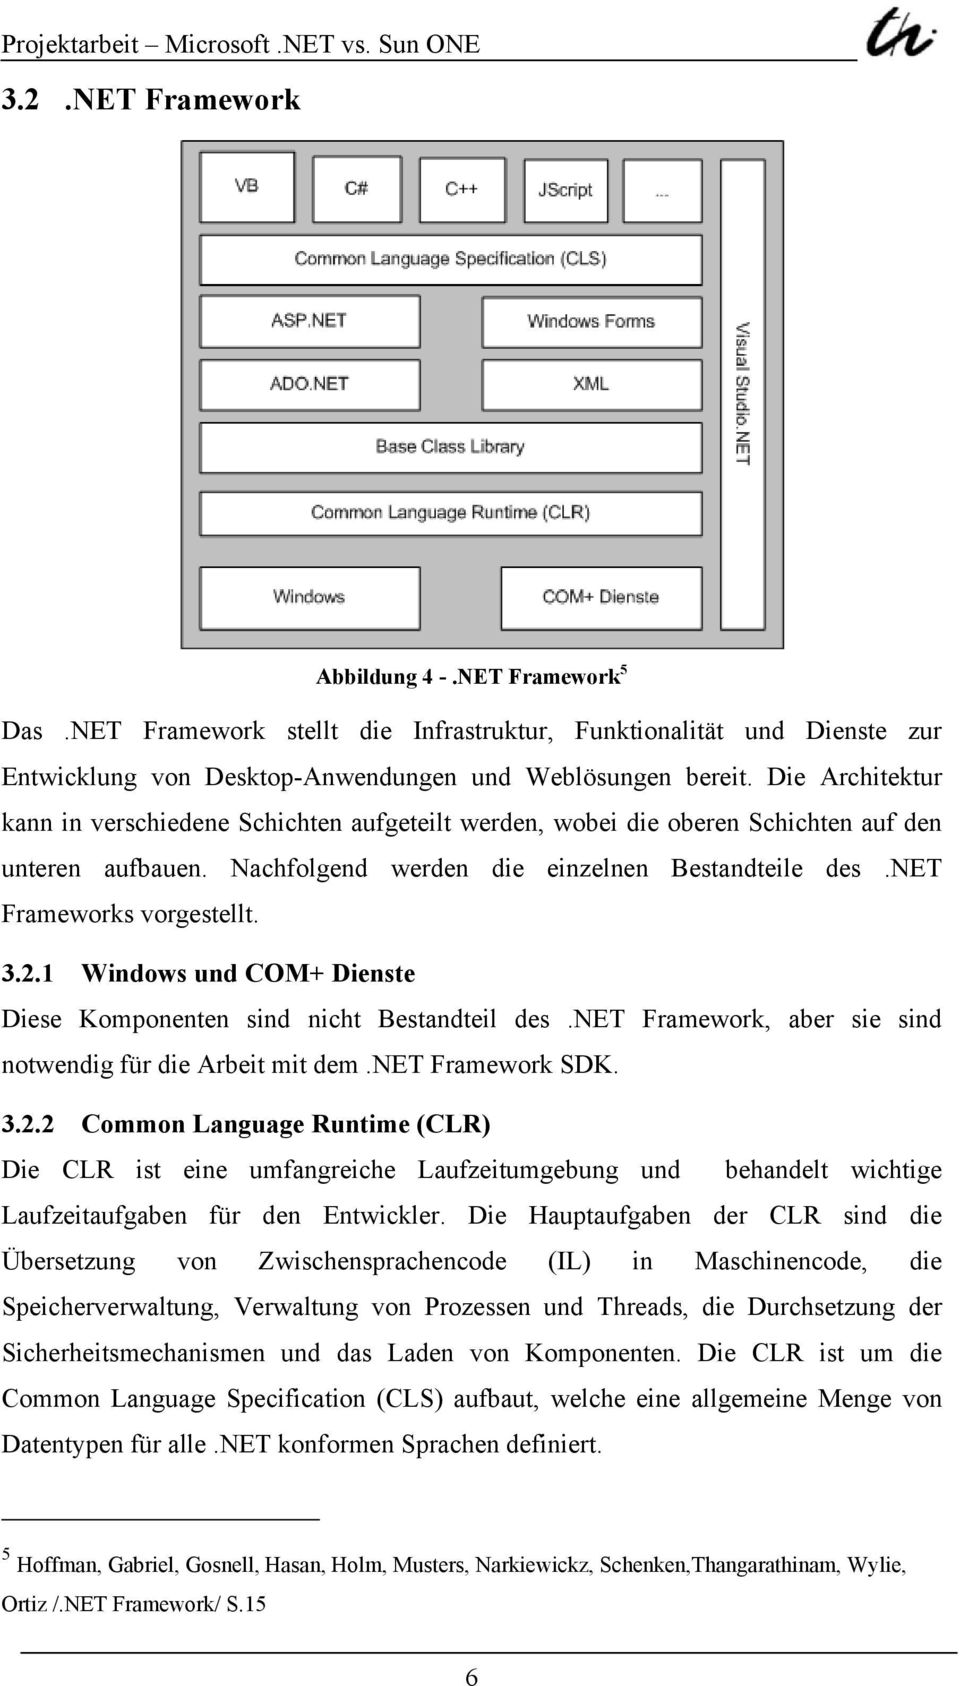 2.1 Windows und COM+ Dienste Diese Komponenten sind nicht Bestandteil des.net Framework, aber sie sind notwendig für die Arbeit mit dem.net Framework SDK. 3.2.2 Common Language Runtime (CLR) Die CLR ist eine umfangreiche Laufzeitumgebung und behandelt wichtige Laufzeitaufgaben für den Entwickler.